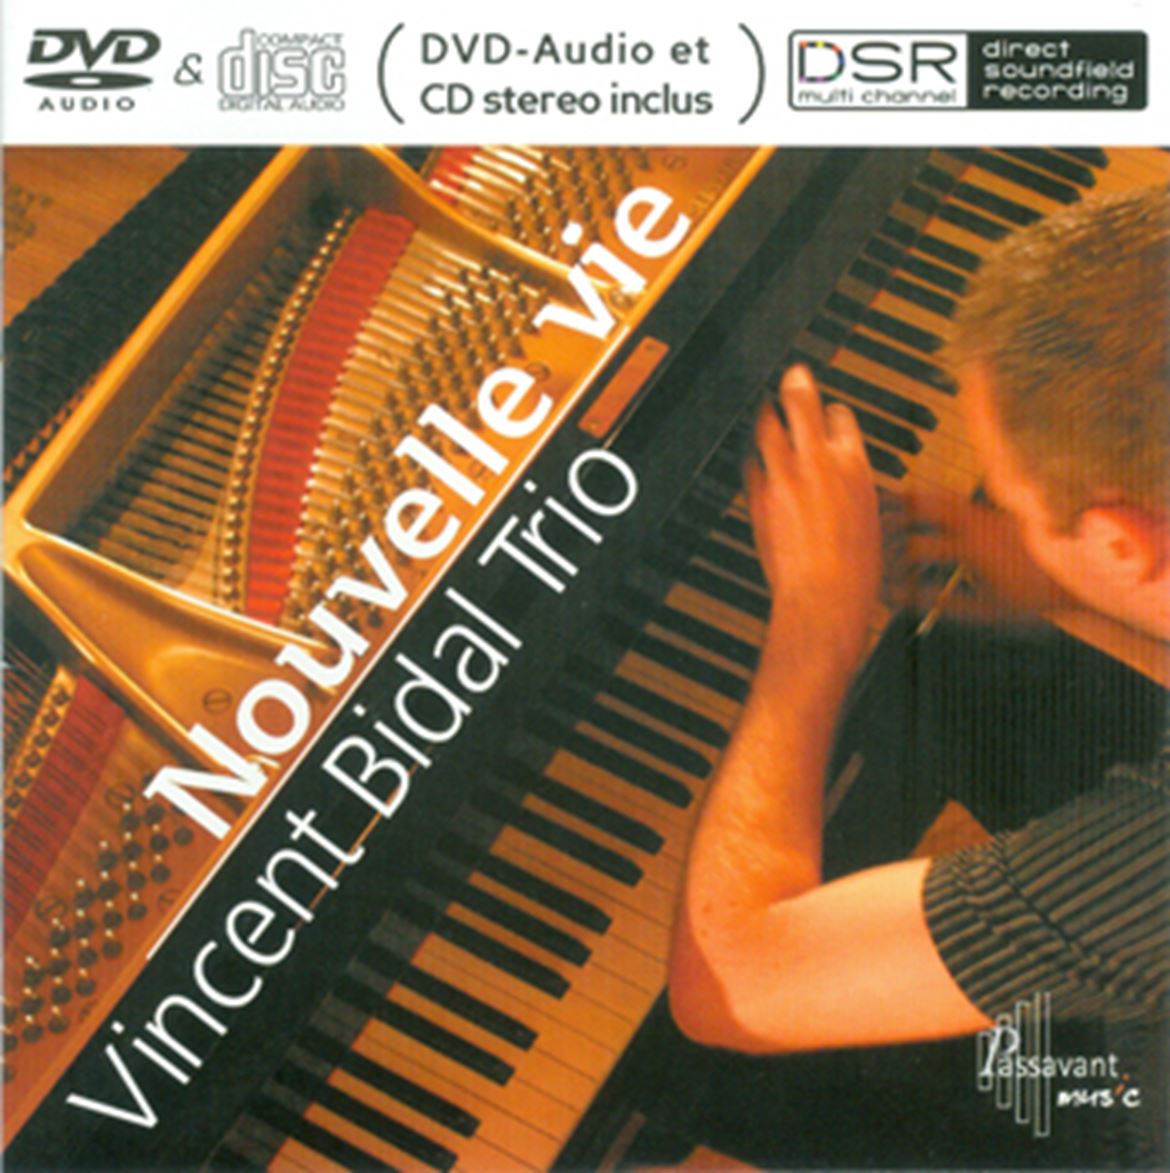 Capa do disco de promoção da DSR, nas versões CD e DVD-audio multicanal